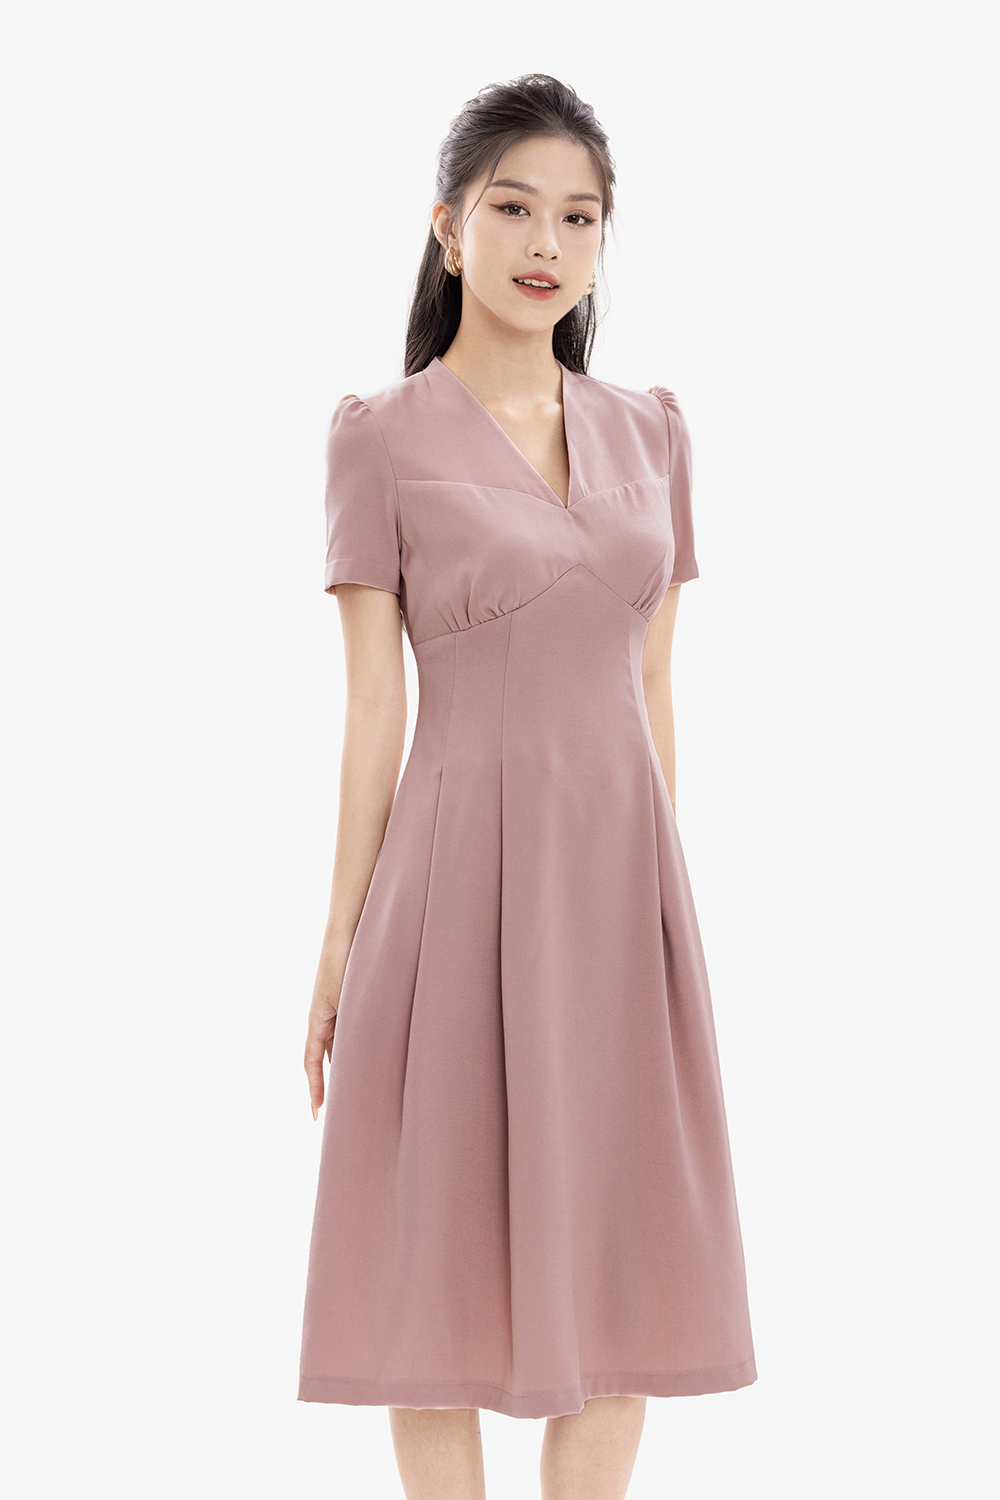 Đầm hồng công sở cổ v dáng xòe xếp ly KK167-14 | Thời trang công sở K&K Fashion